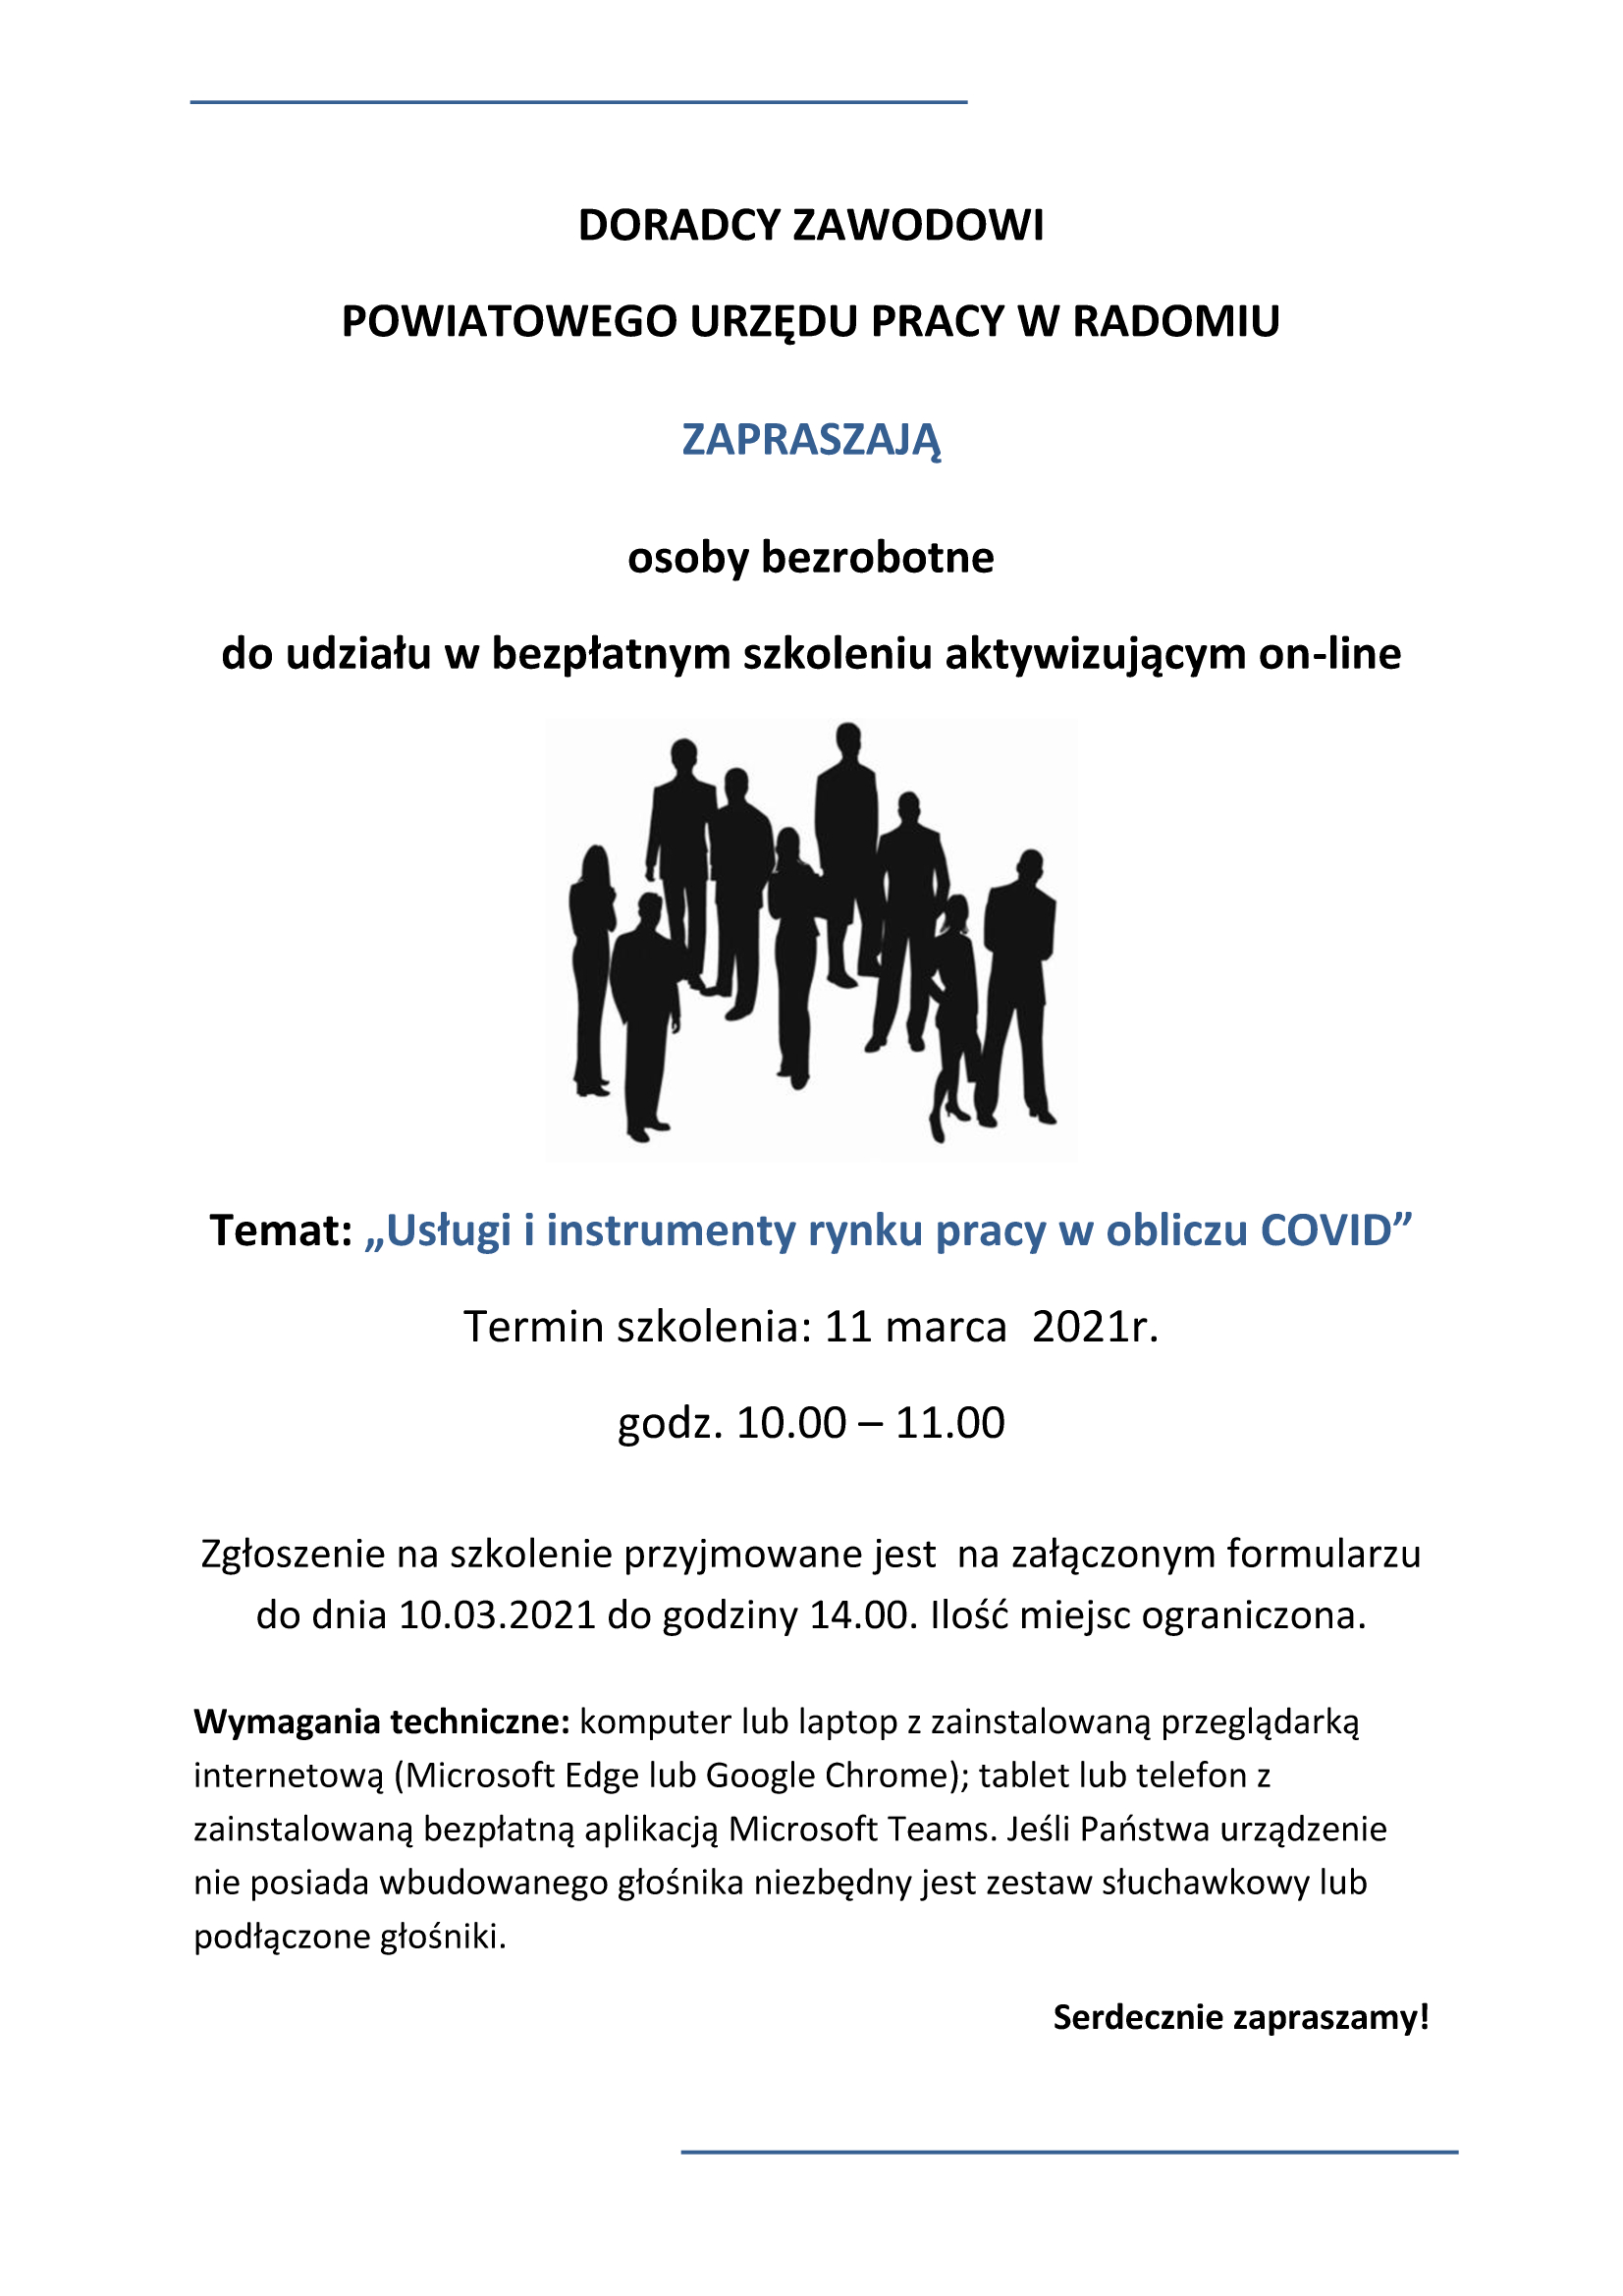 11 marca 2021 - Zaproszenie na szkolenie online - Usługi  i  instrumenty  rynku  pracy  w obliczu COVID, więcej informacji w załączeniu